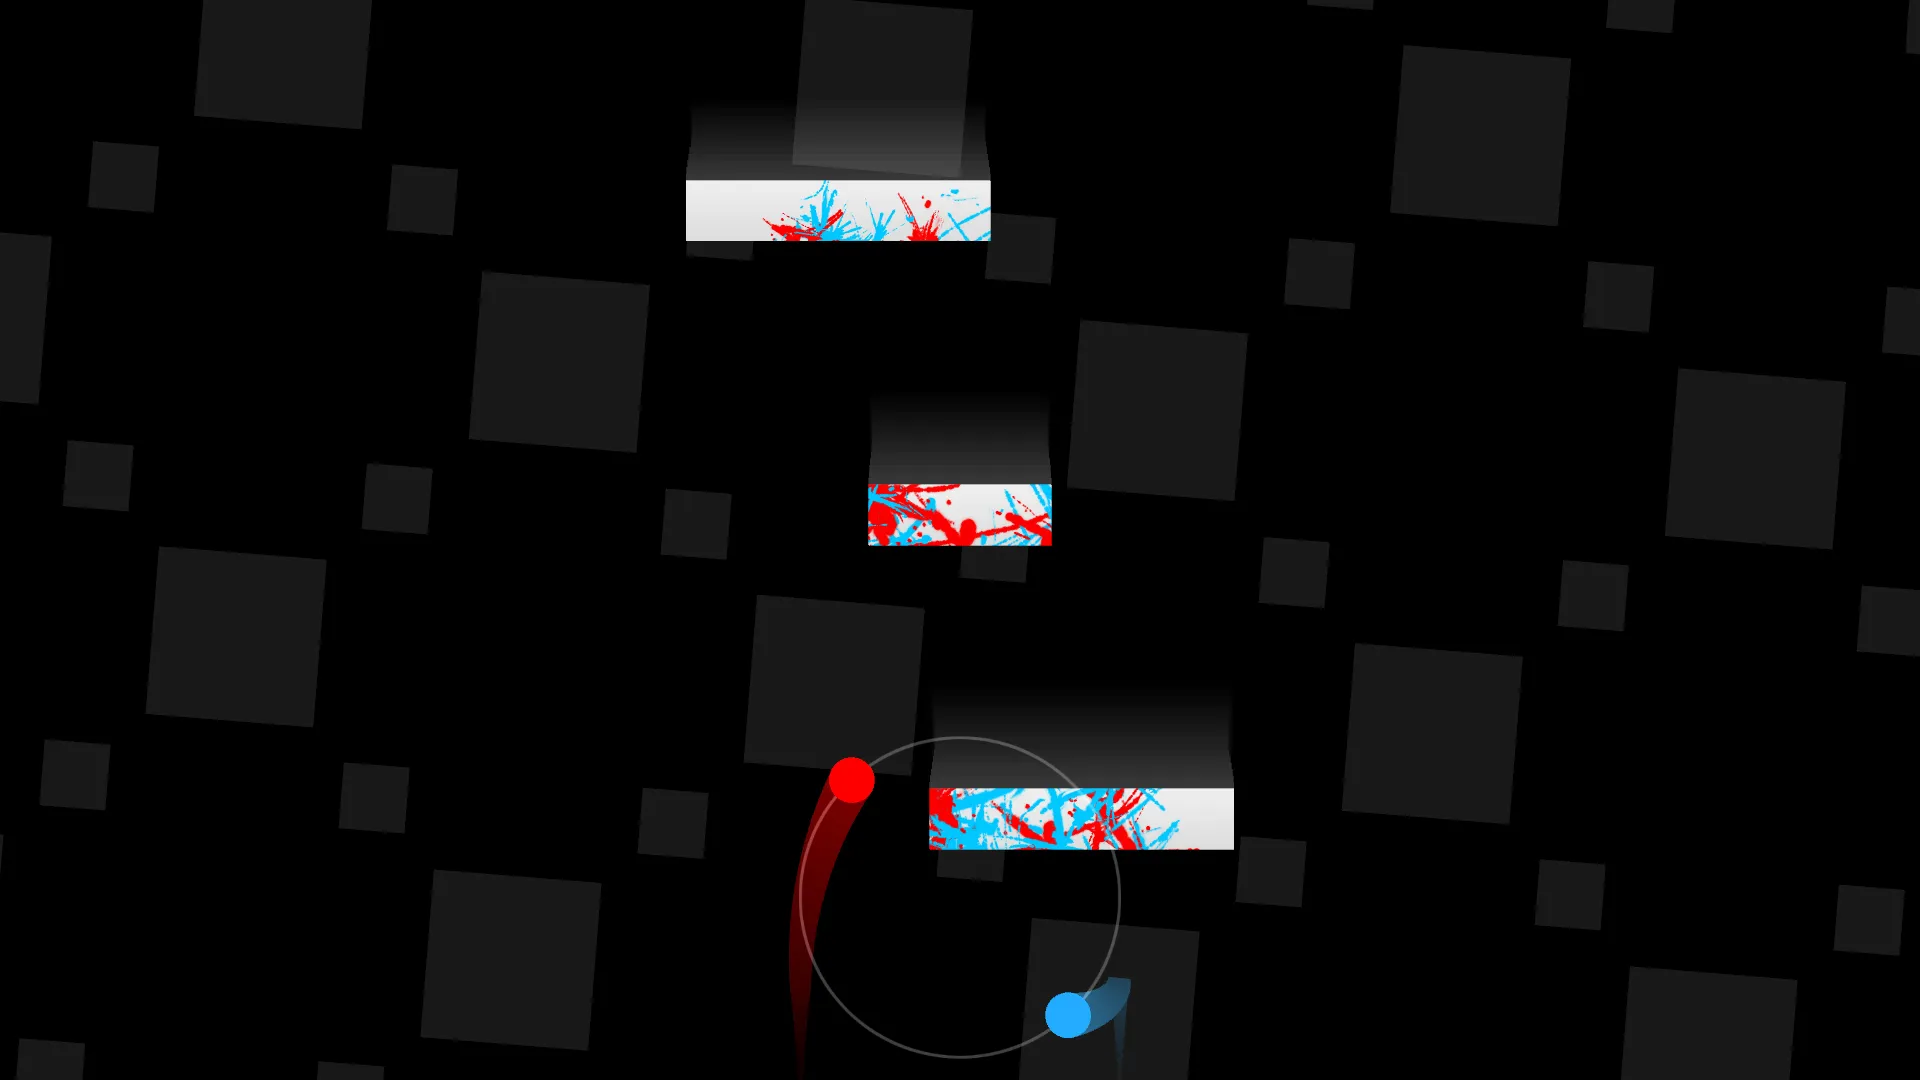 محیط بازی Duet که دو شی قرمز و آبی را نشان میدهد